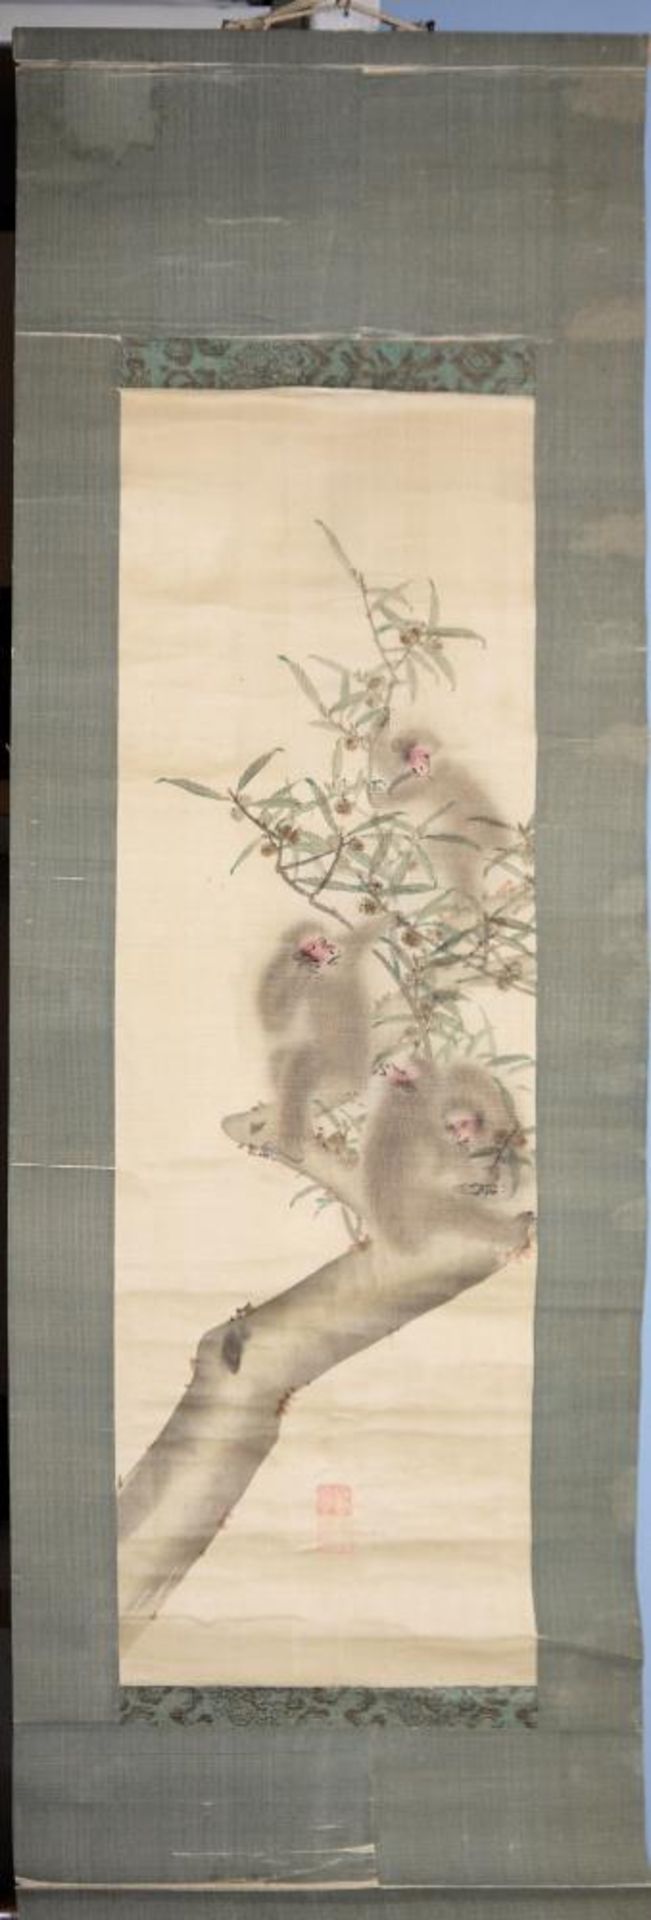 Vier Affen auf Baum, Bildrolle der Edo/Meiji-Zeit, Japan 19. Jh. Affenhorde auf einem